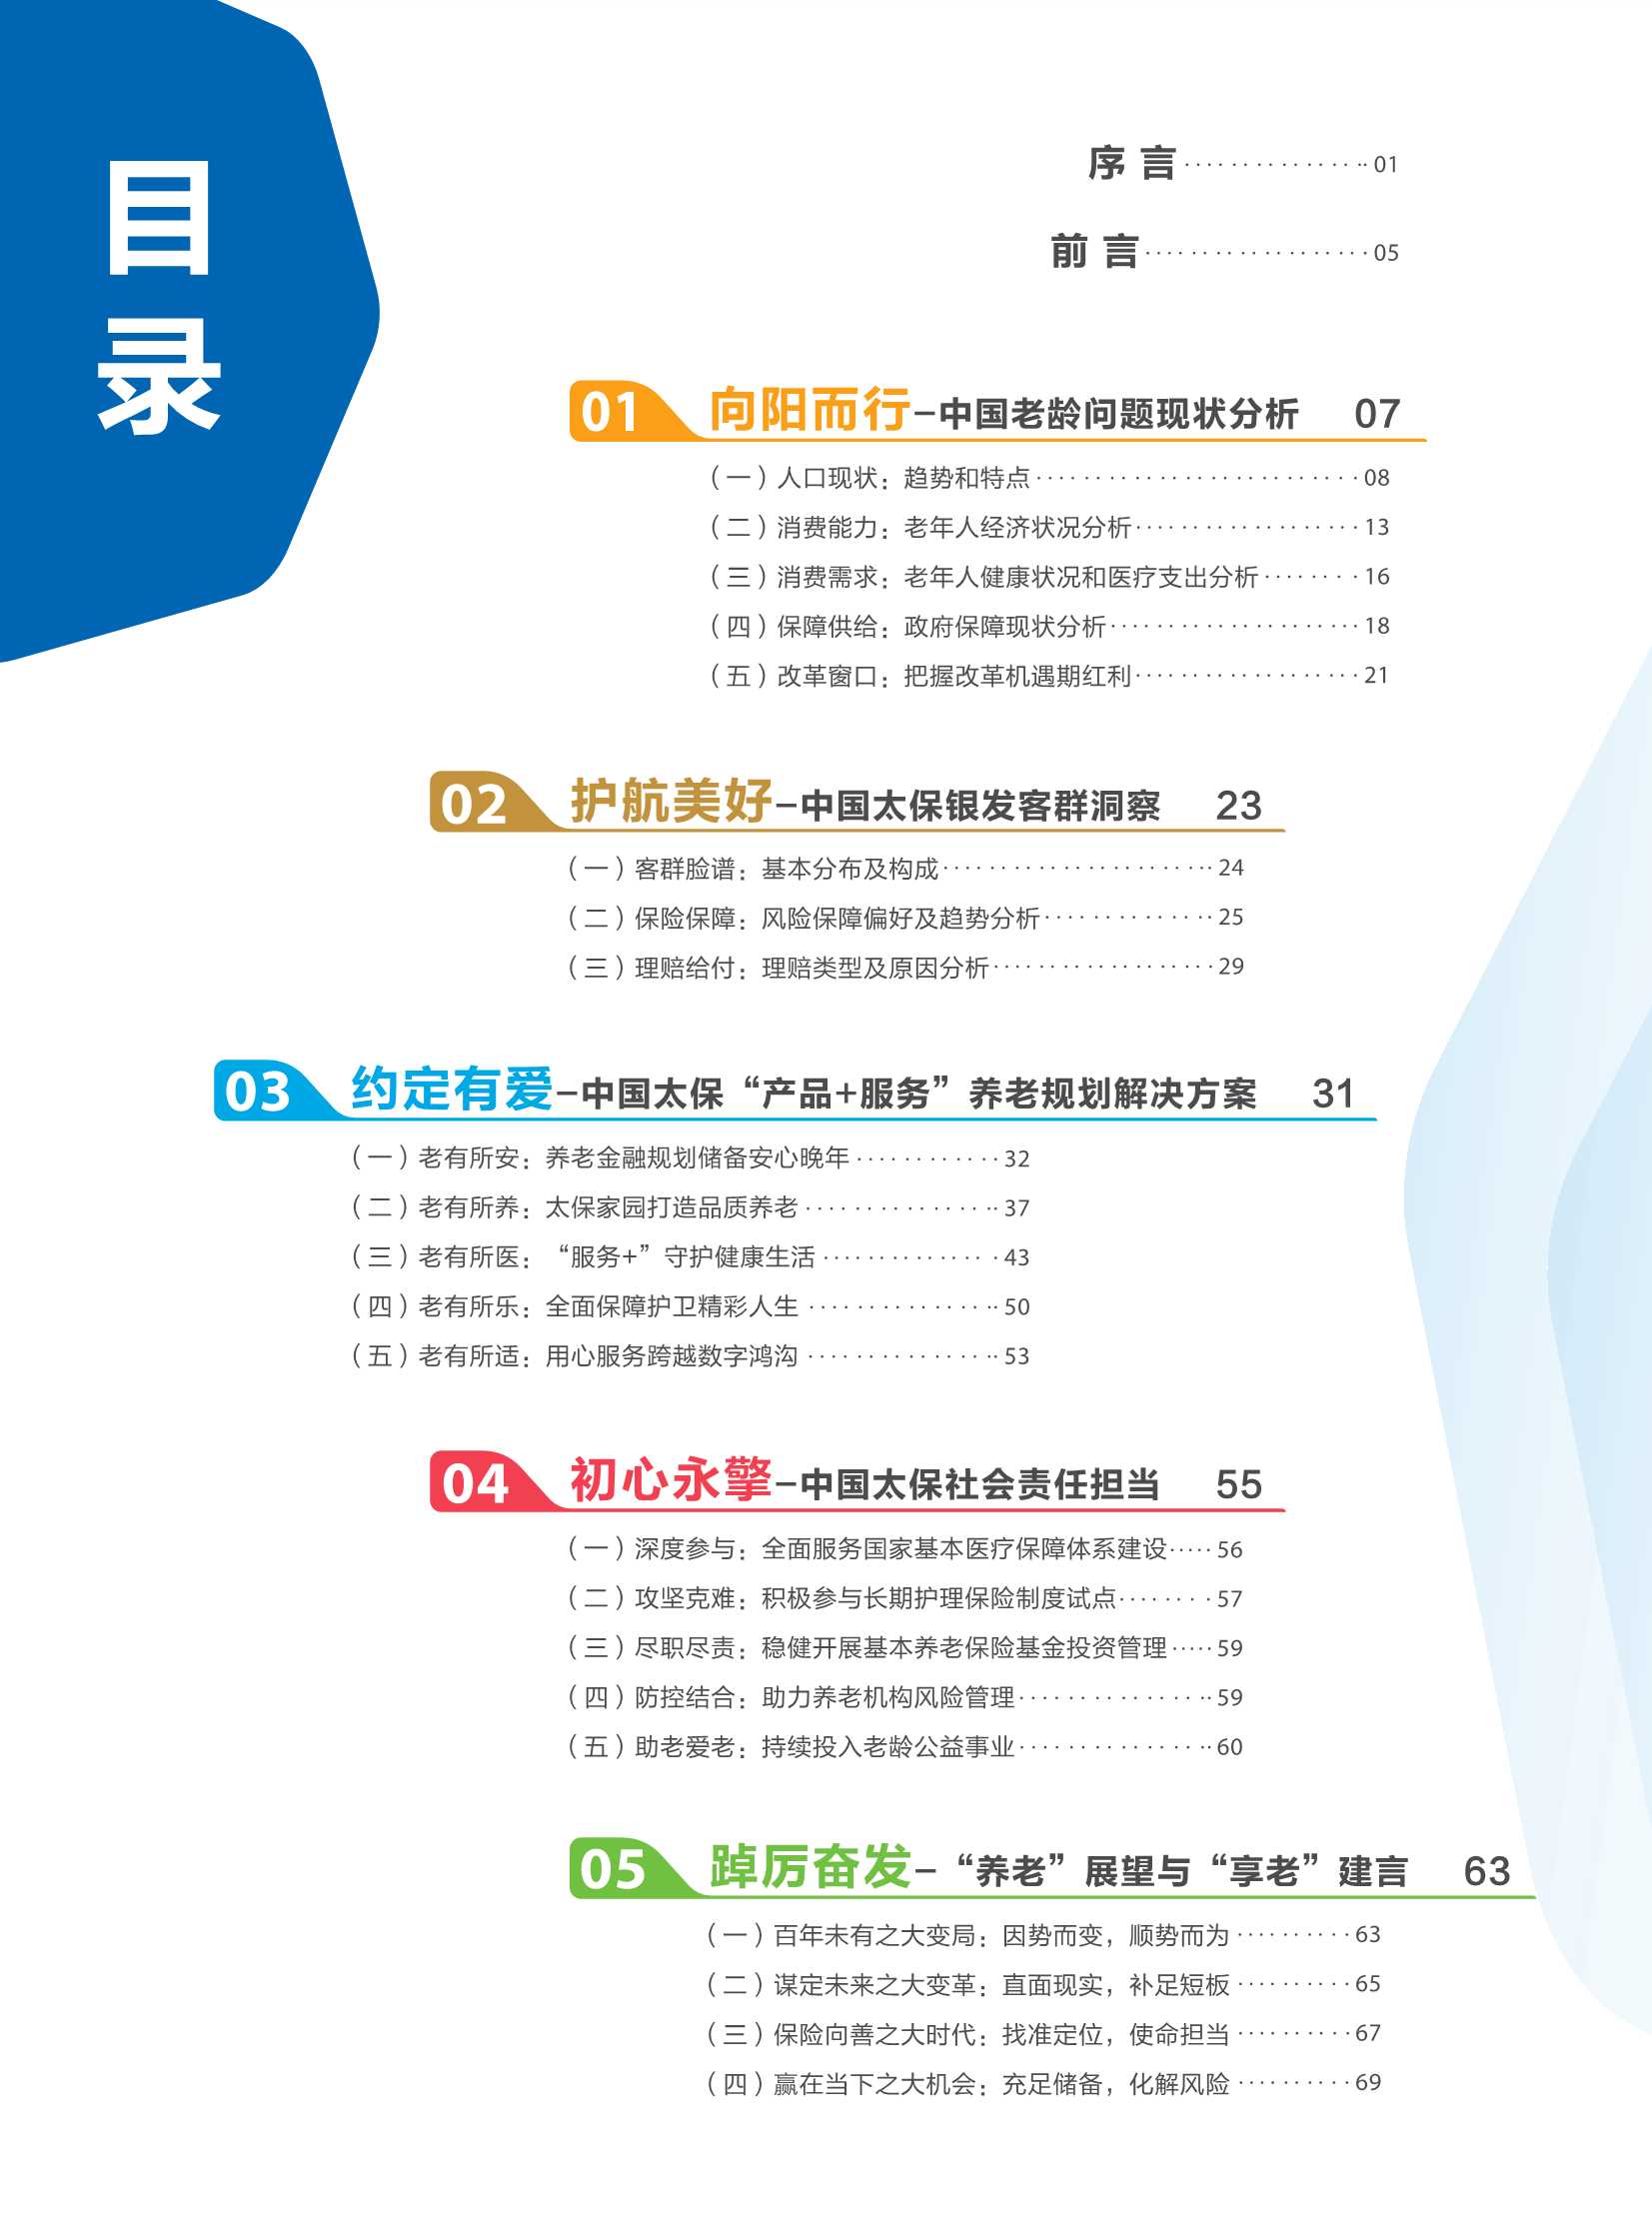 中国太保&社科院-居民养老规划与风险管理白皮书-2021.11-75页